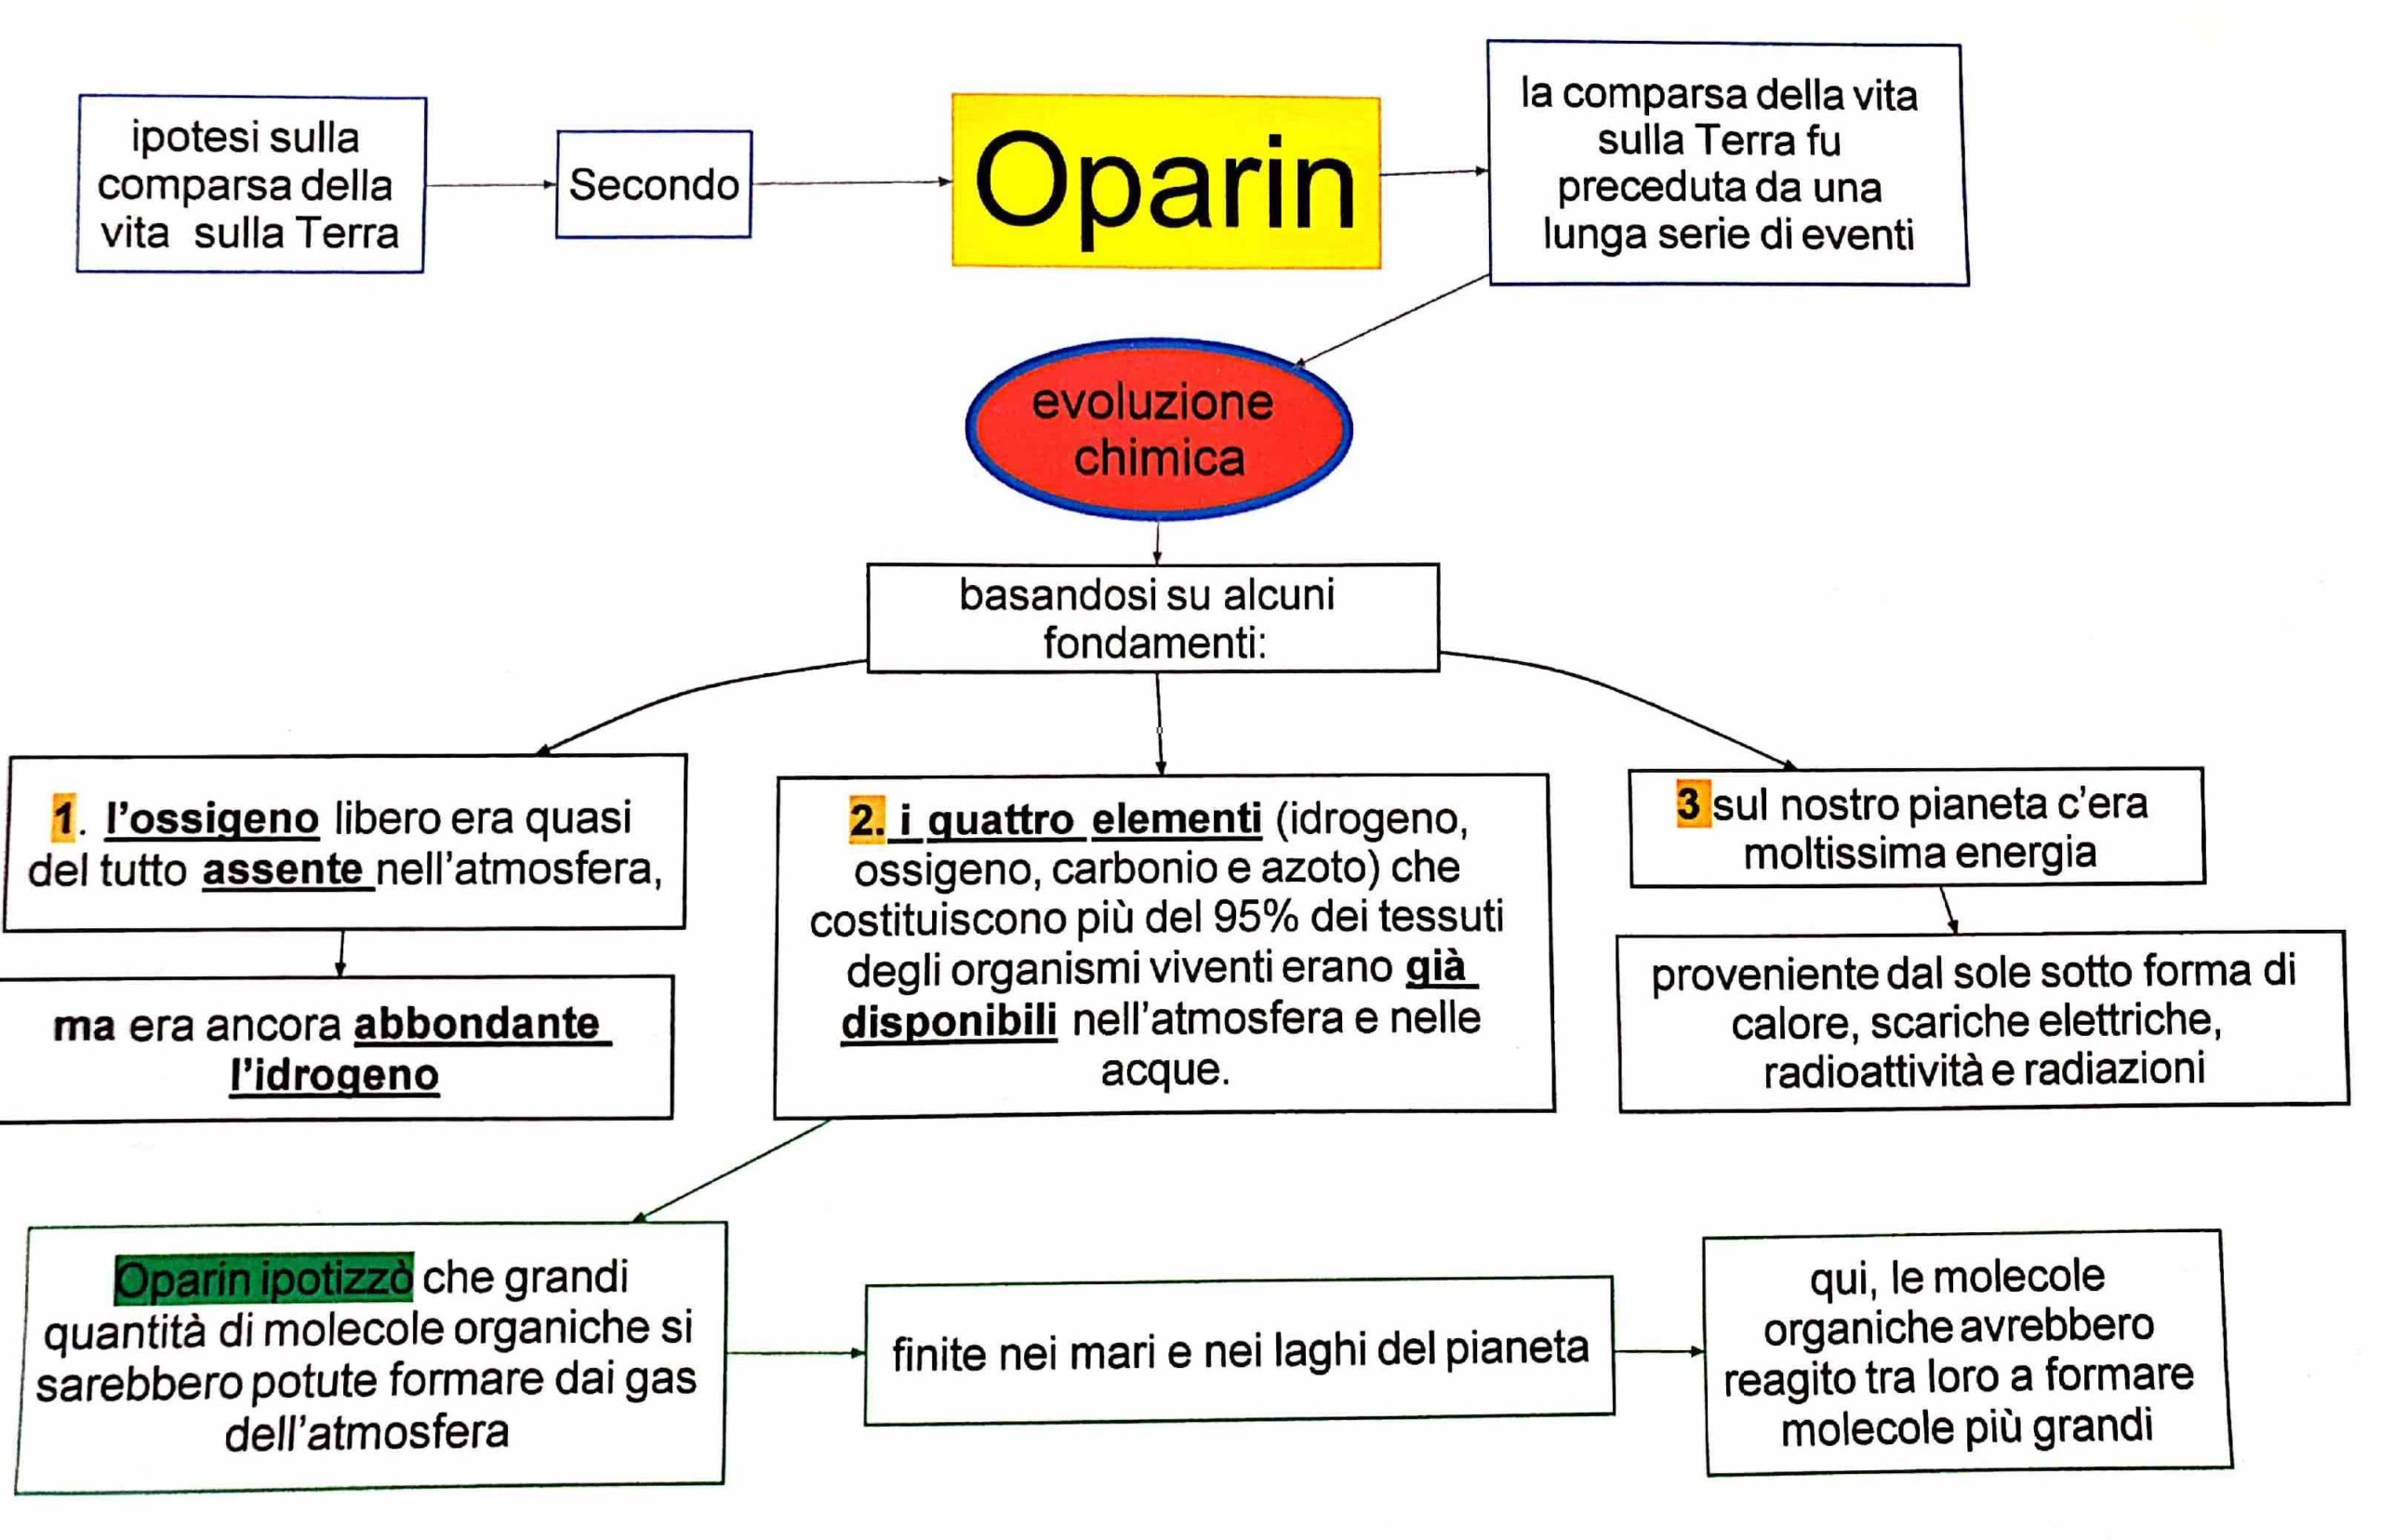 evoluzione chimica della vita - Oparin